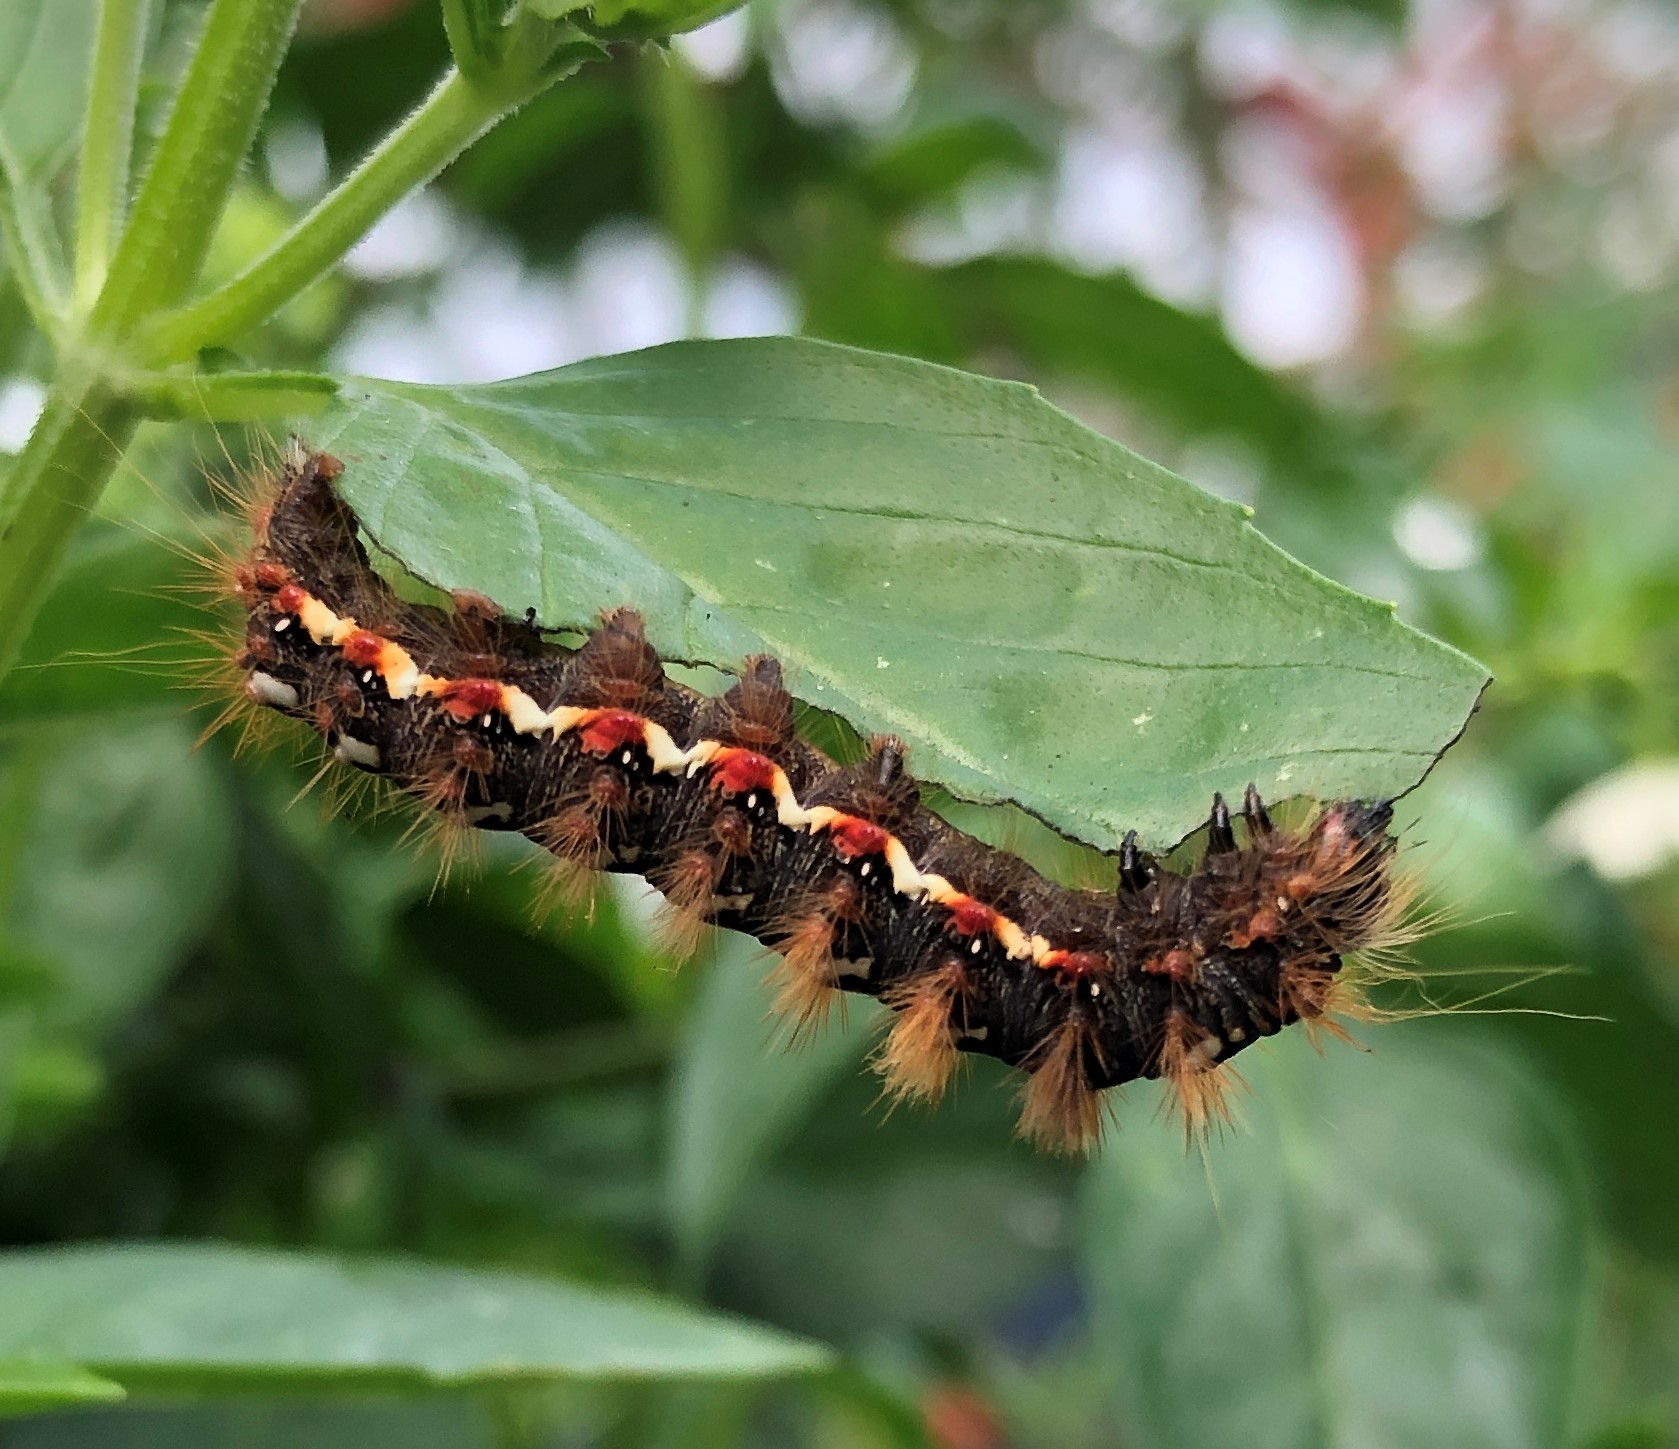 Knot Grass Moth caterpillar